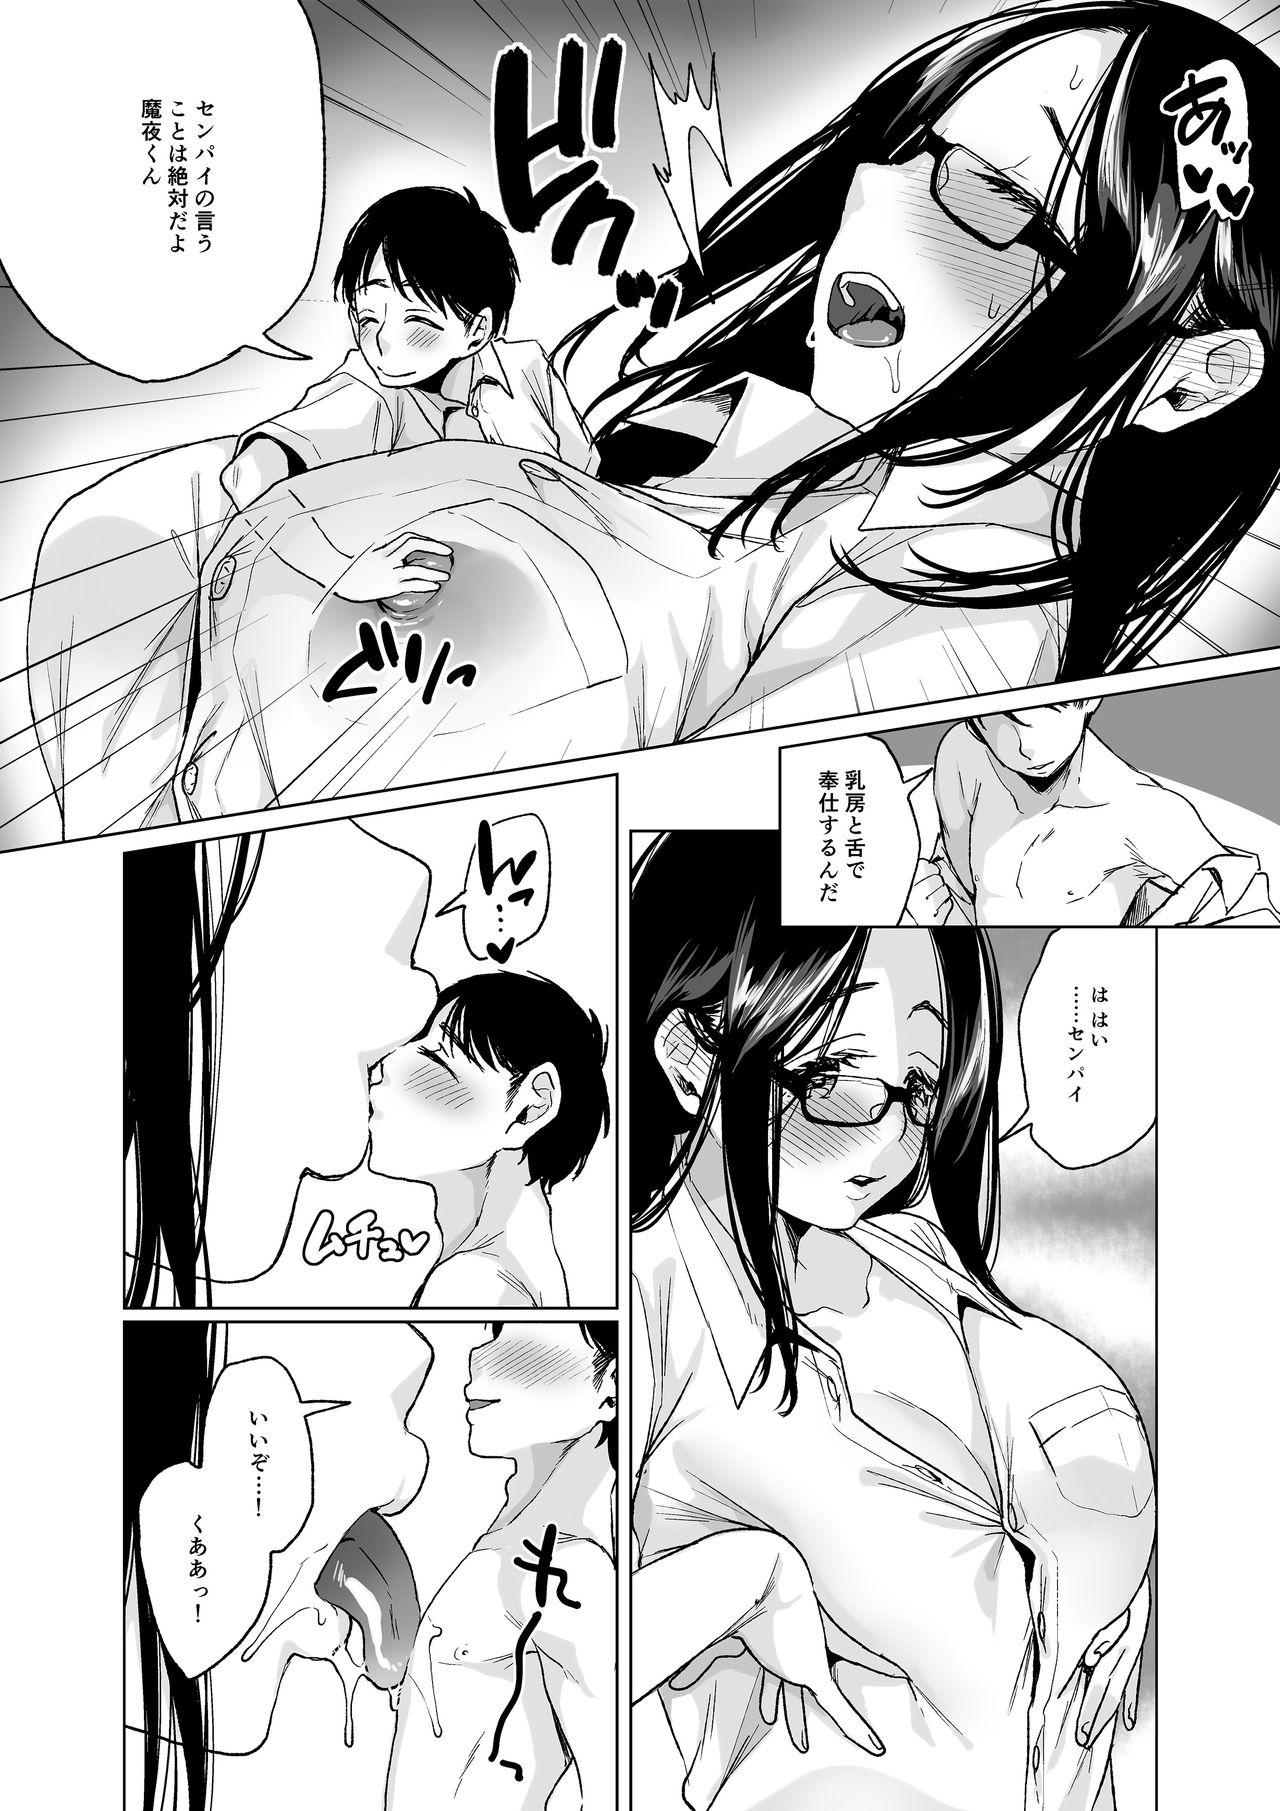 Arrecha MM Vol. 50 Shumatsu wa Oppai ni Yosete♥ Publico - Page 7